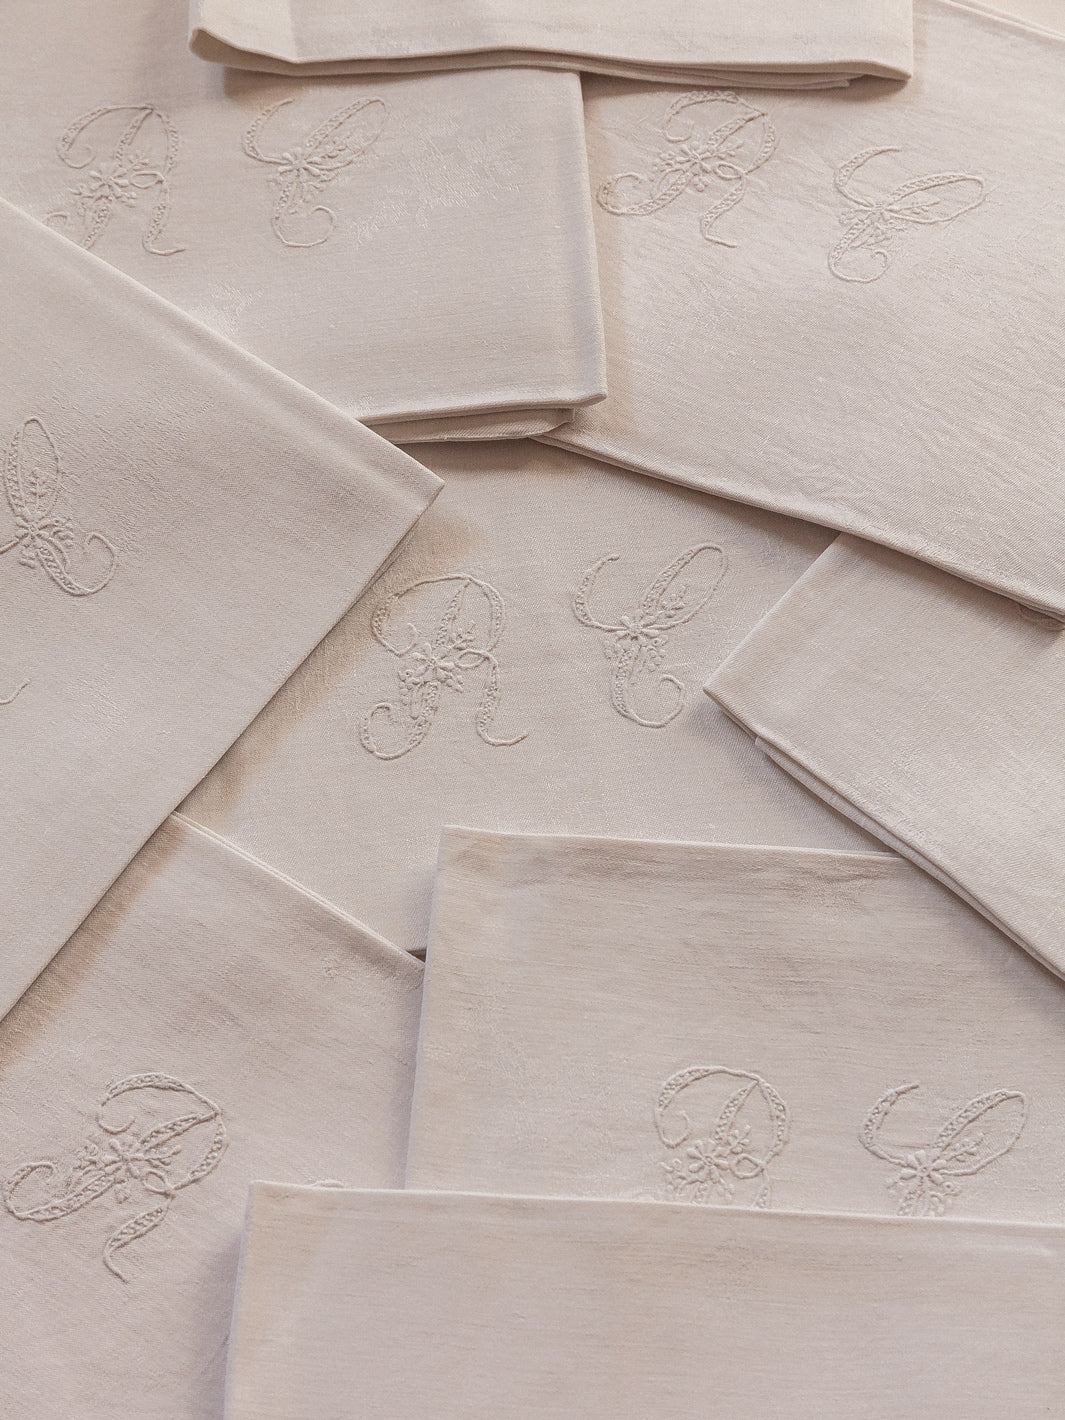 Set of 8 white damask "RC" napkins